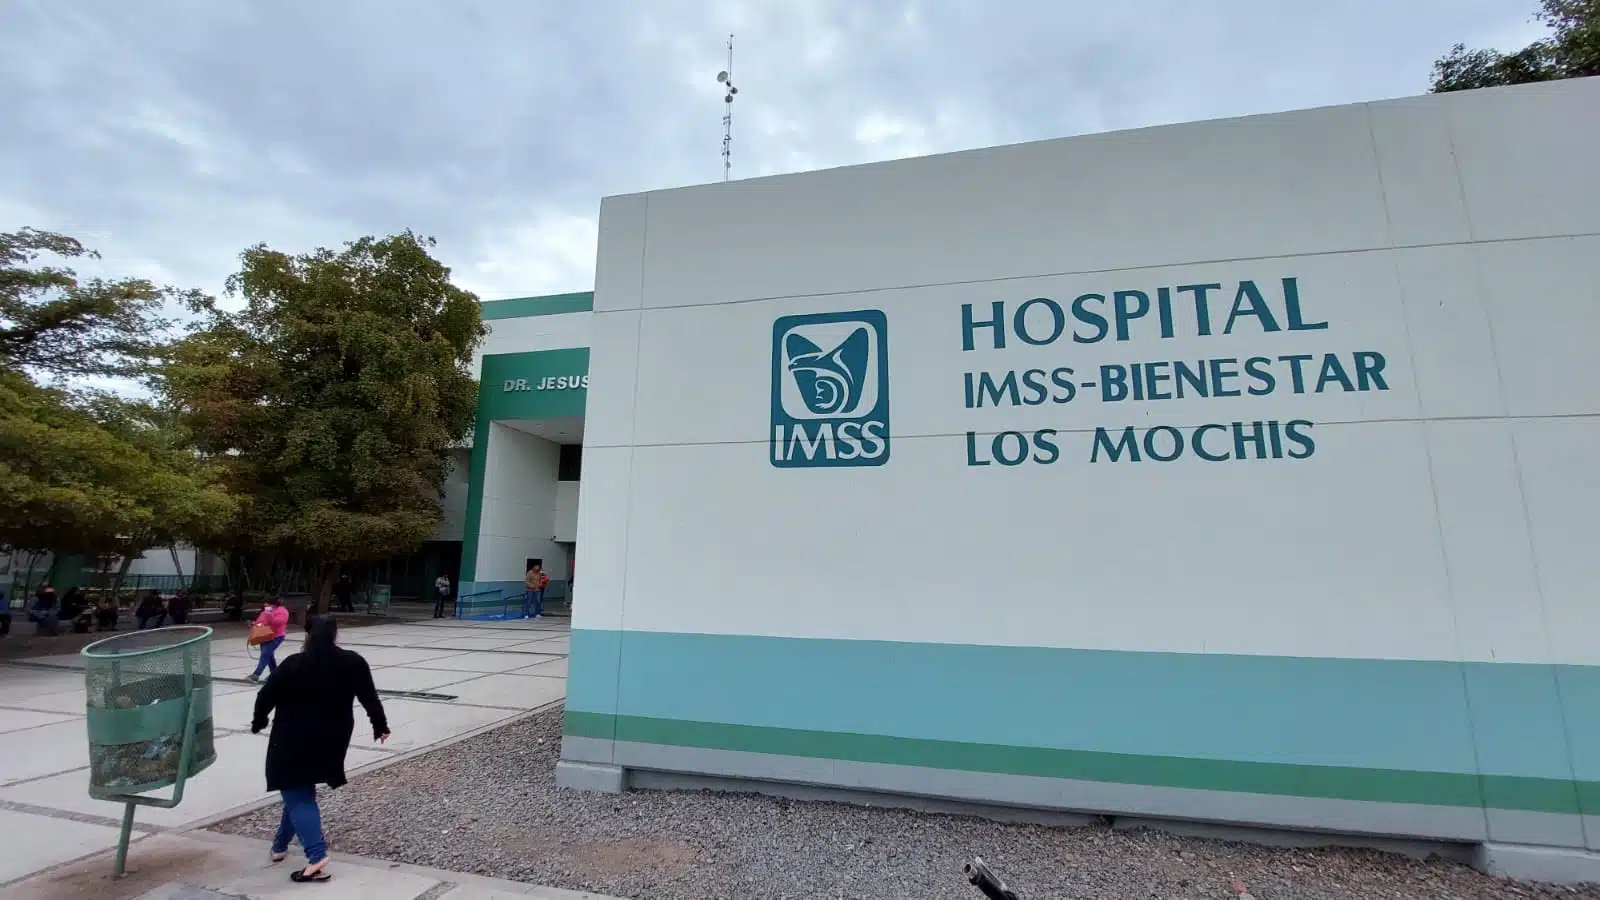 Hospital IMSS-Bienestar de Los Mochis